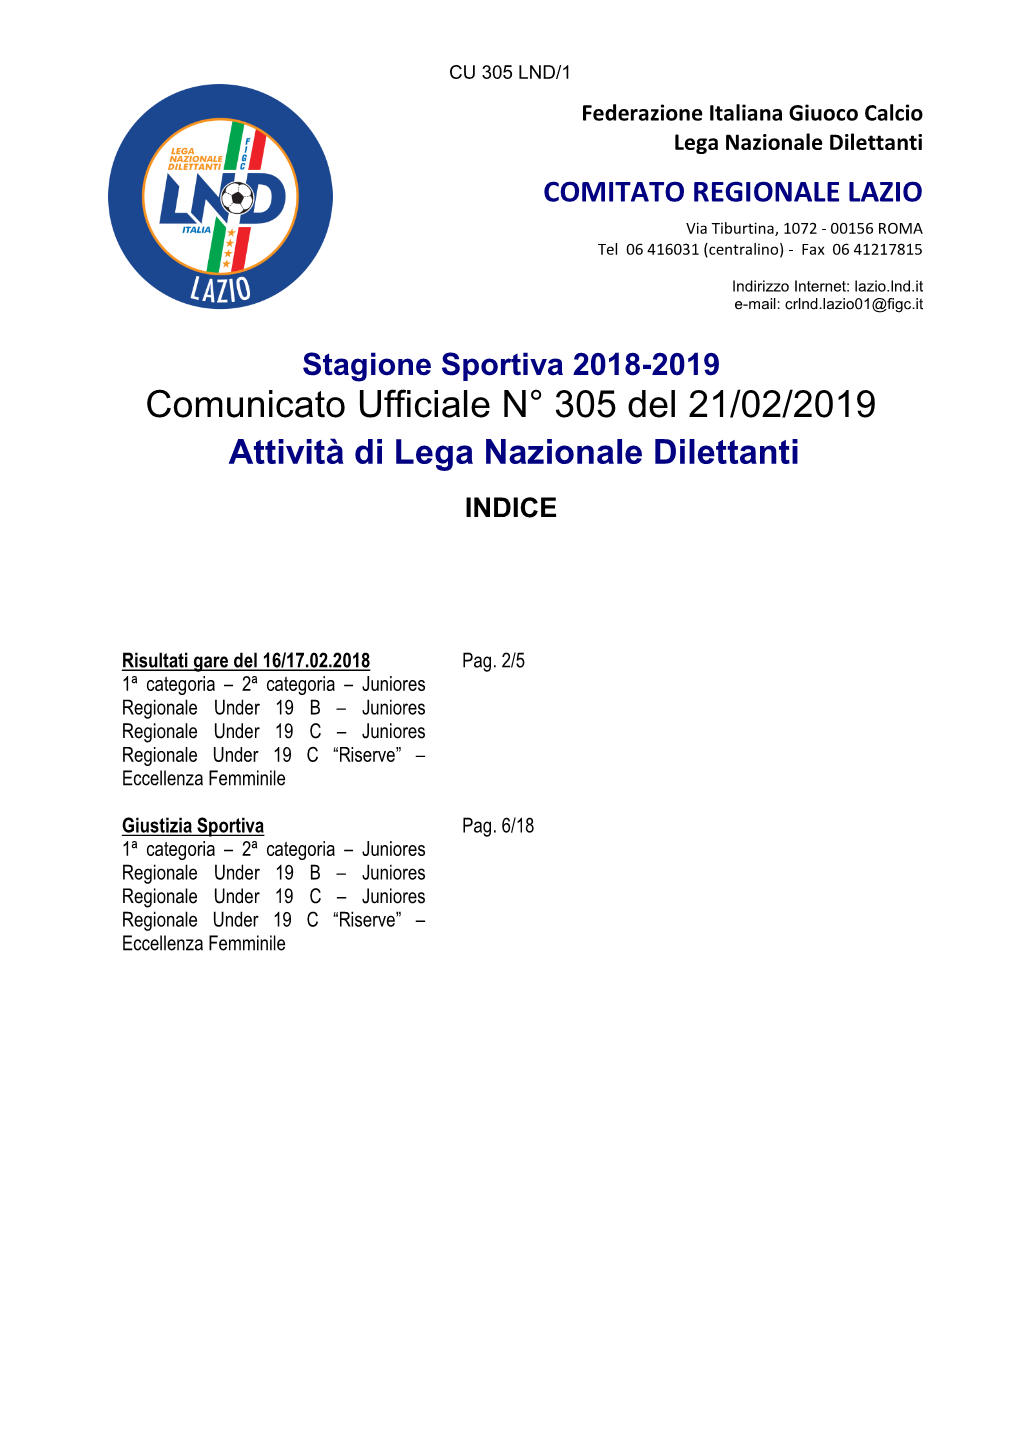 Comunicato Ufficiale N° 305 Del 21/02/2019 Attività Di Lega Nazionale Dilettanti INDICE